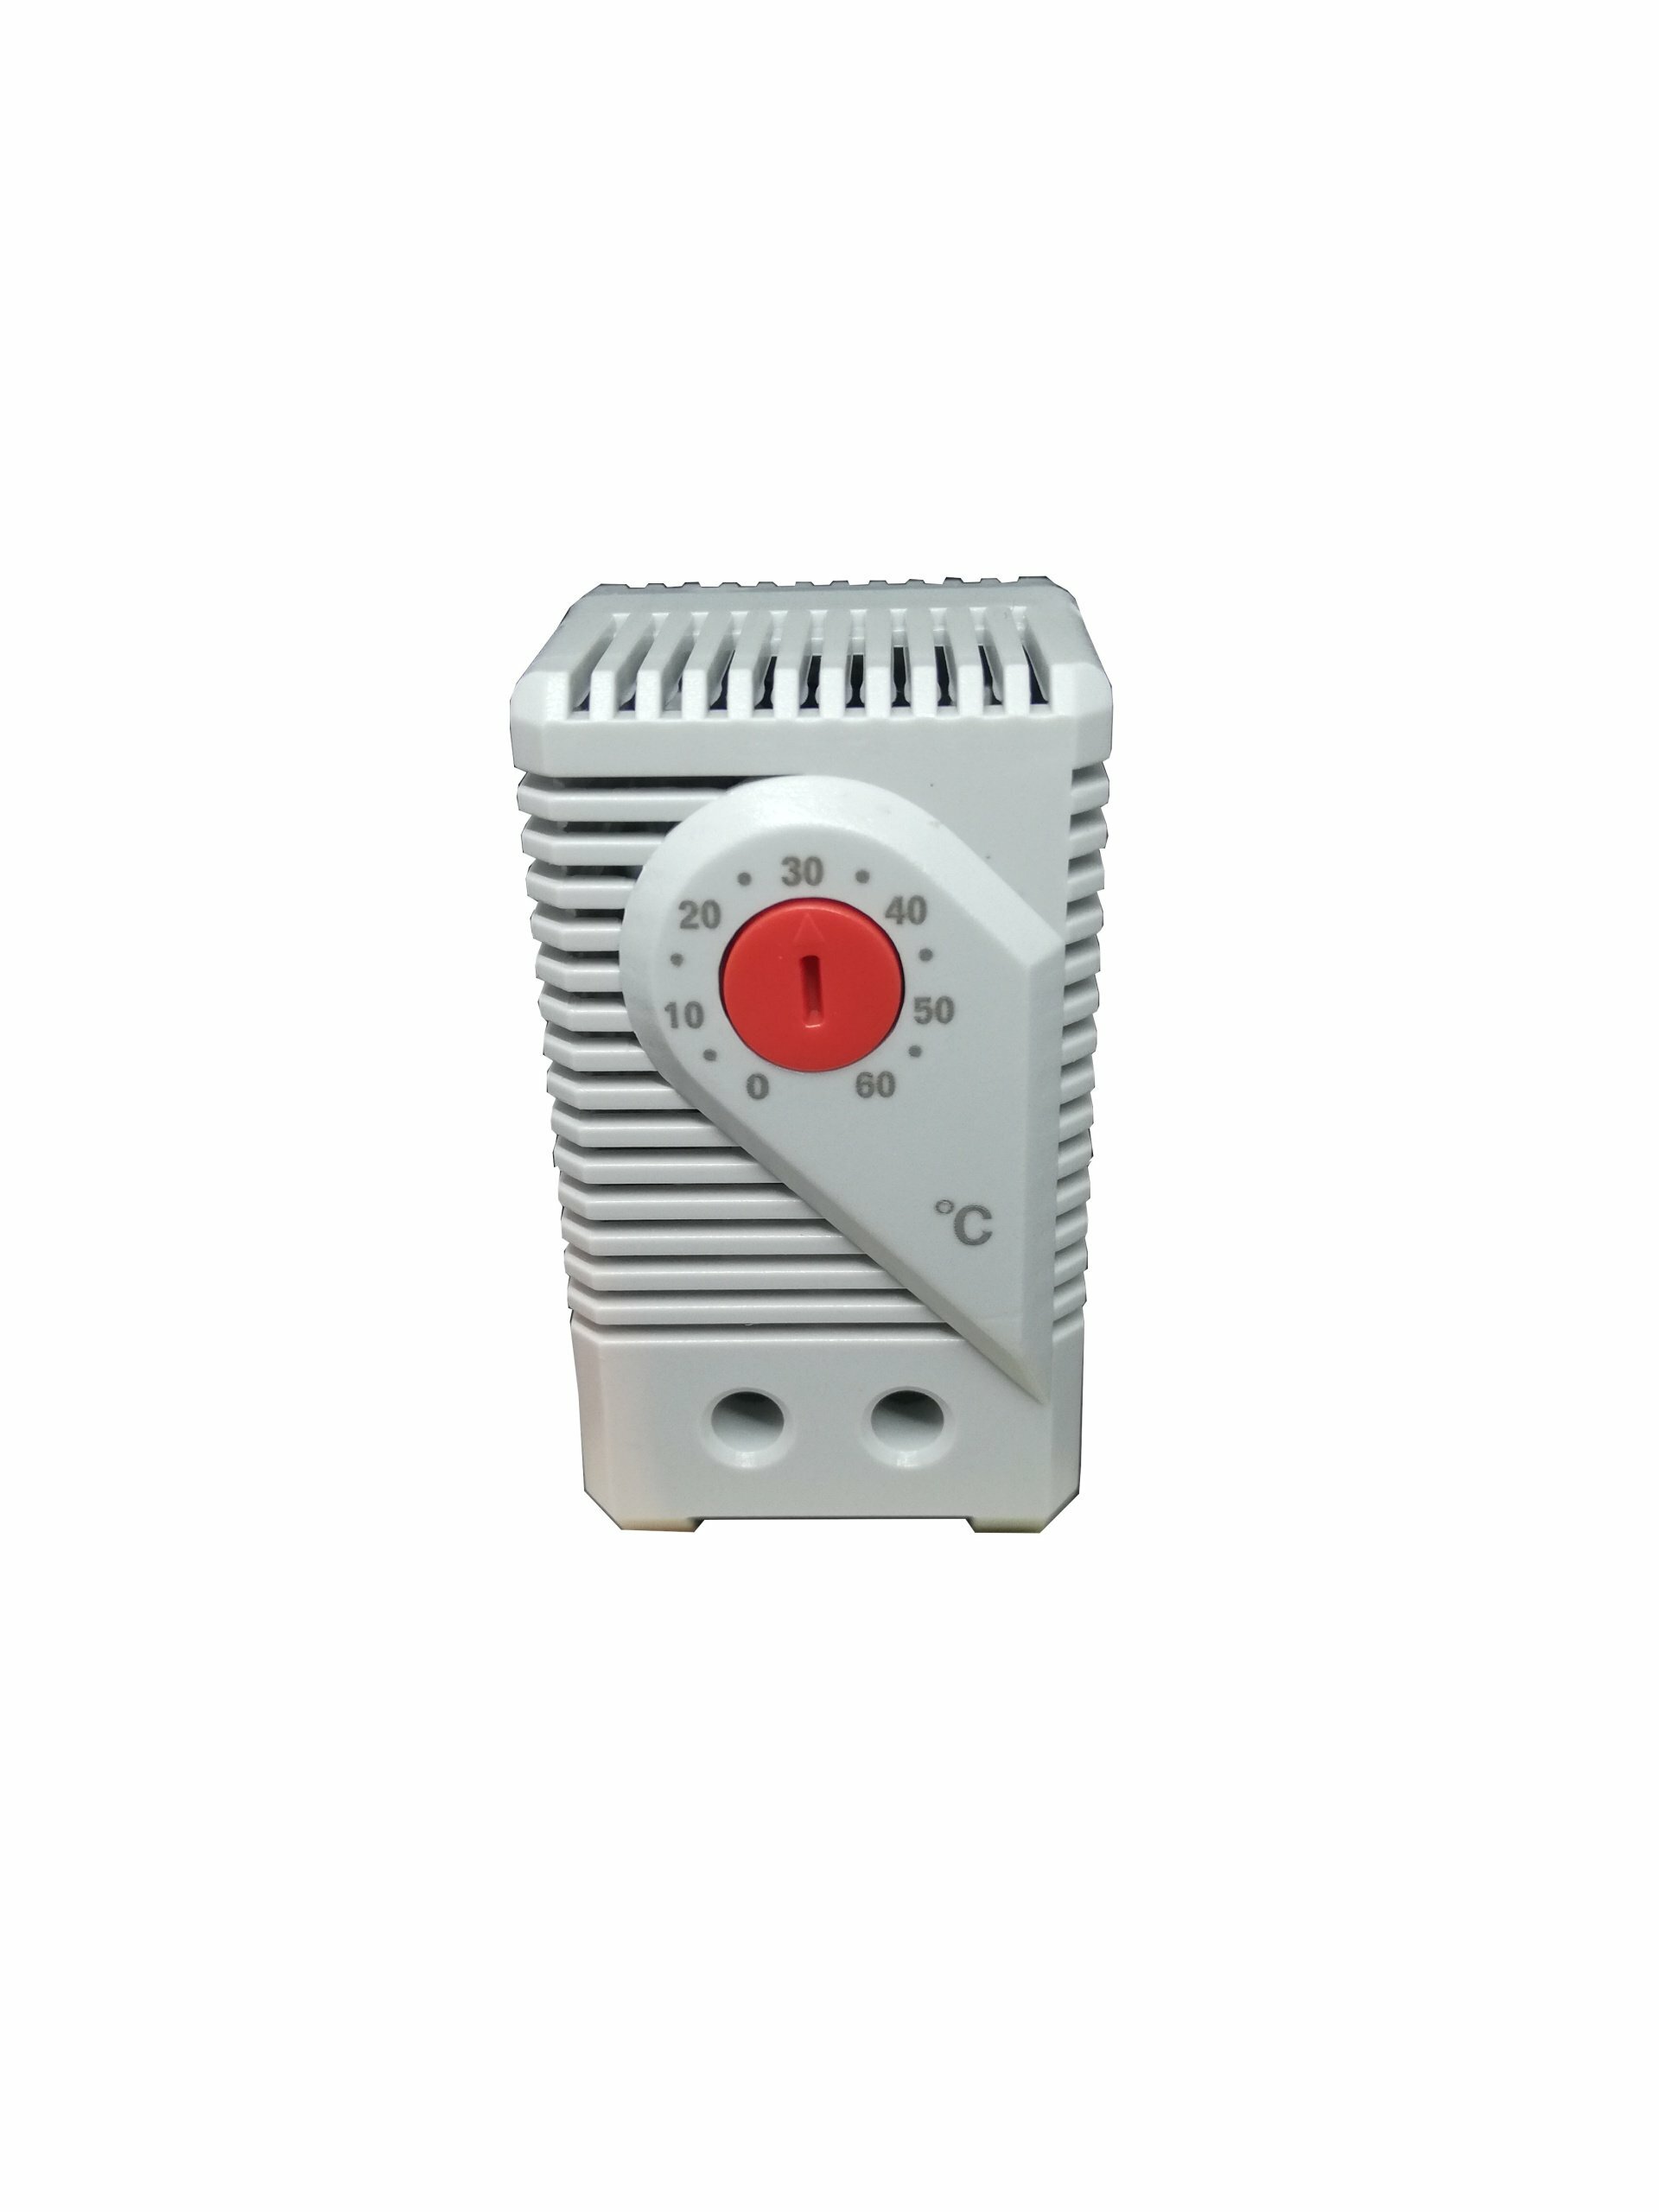 Thermostat Öffner 0-60° C Schaltschrank Steuerung Temperatur 